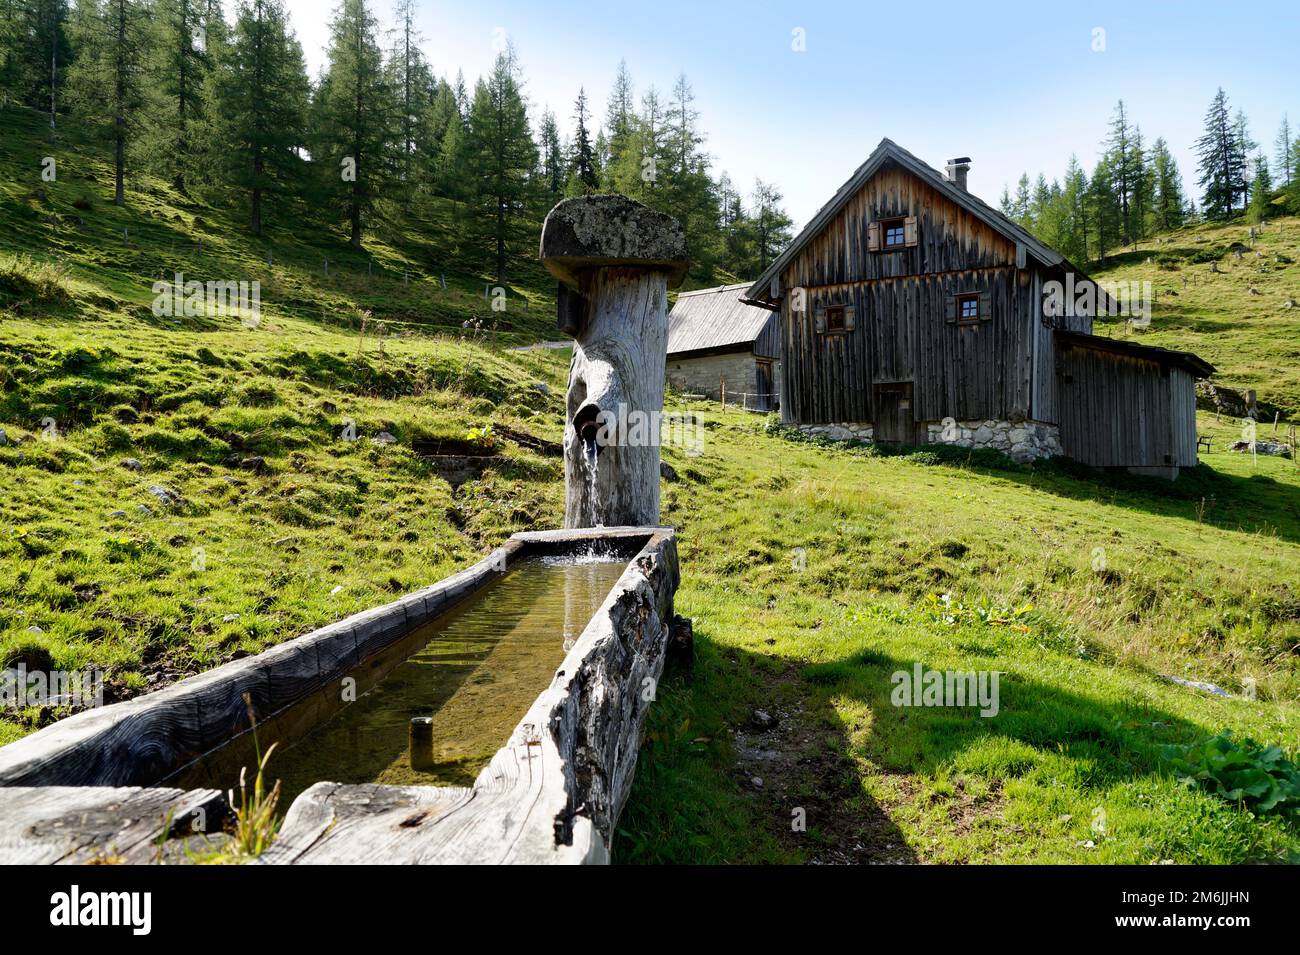 Cabina alpina e un canale d'acqua ai piedi del monte Dachstein, nel villaggio alpino Neustatt Alm, nelle Alpi austriache di Steiermark Foto Stock